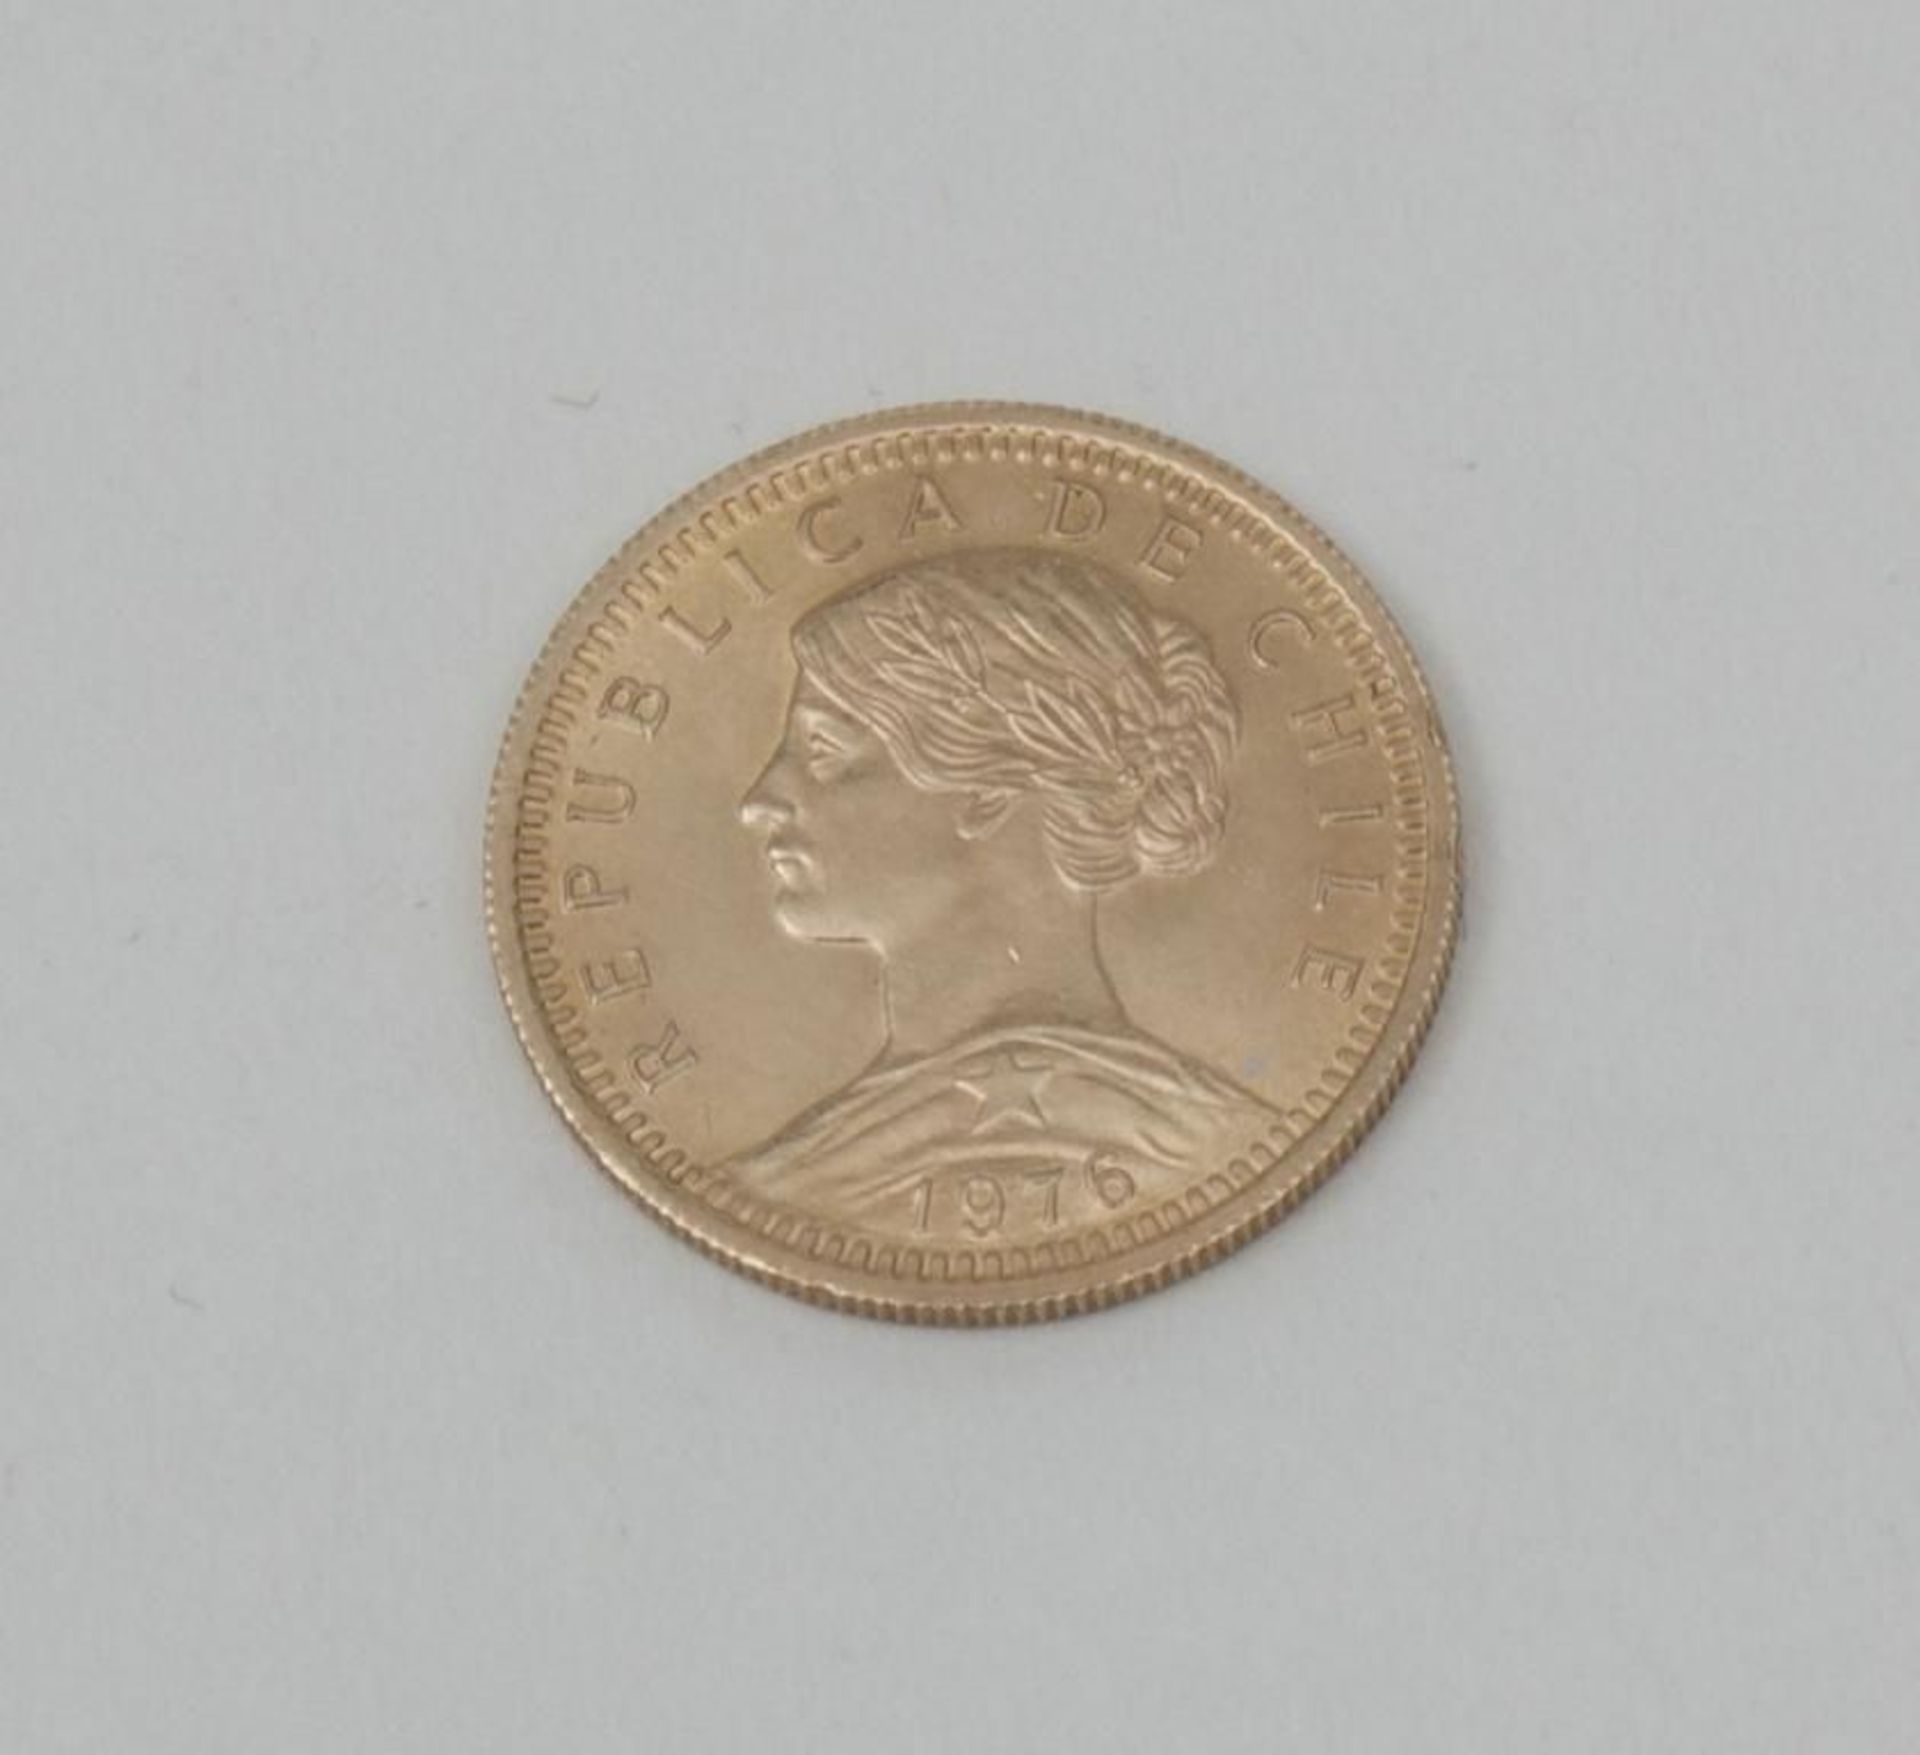 Goldmünze 20 Pesos, Chile, 1976  Avers Engel der Freiheit mit Umschrift 'Republica de Chile 1976',